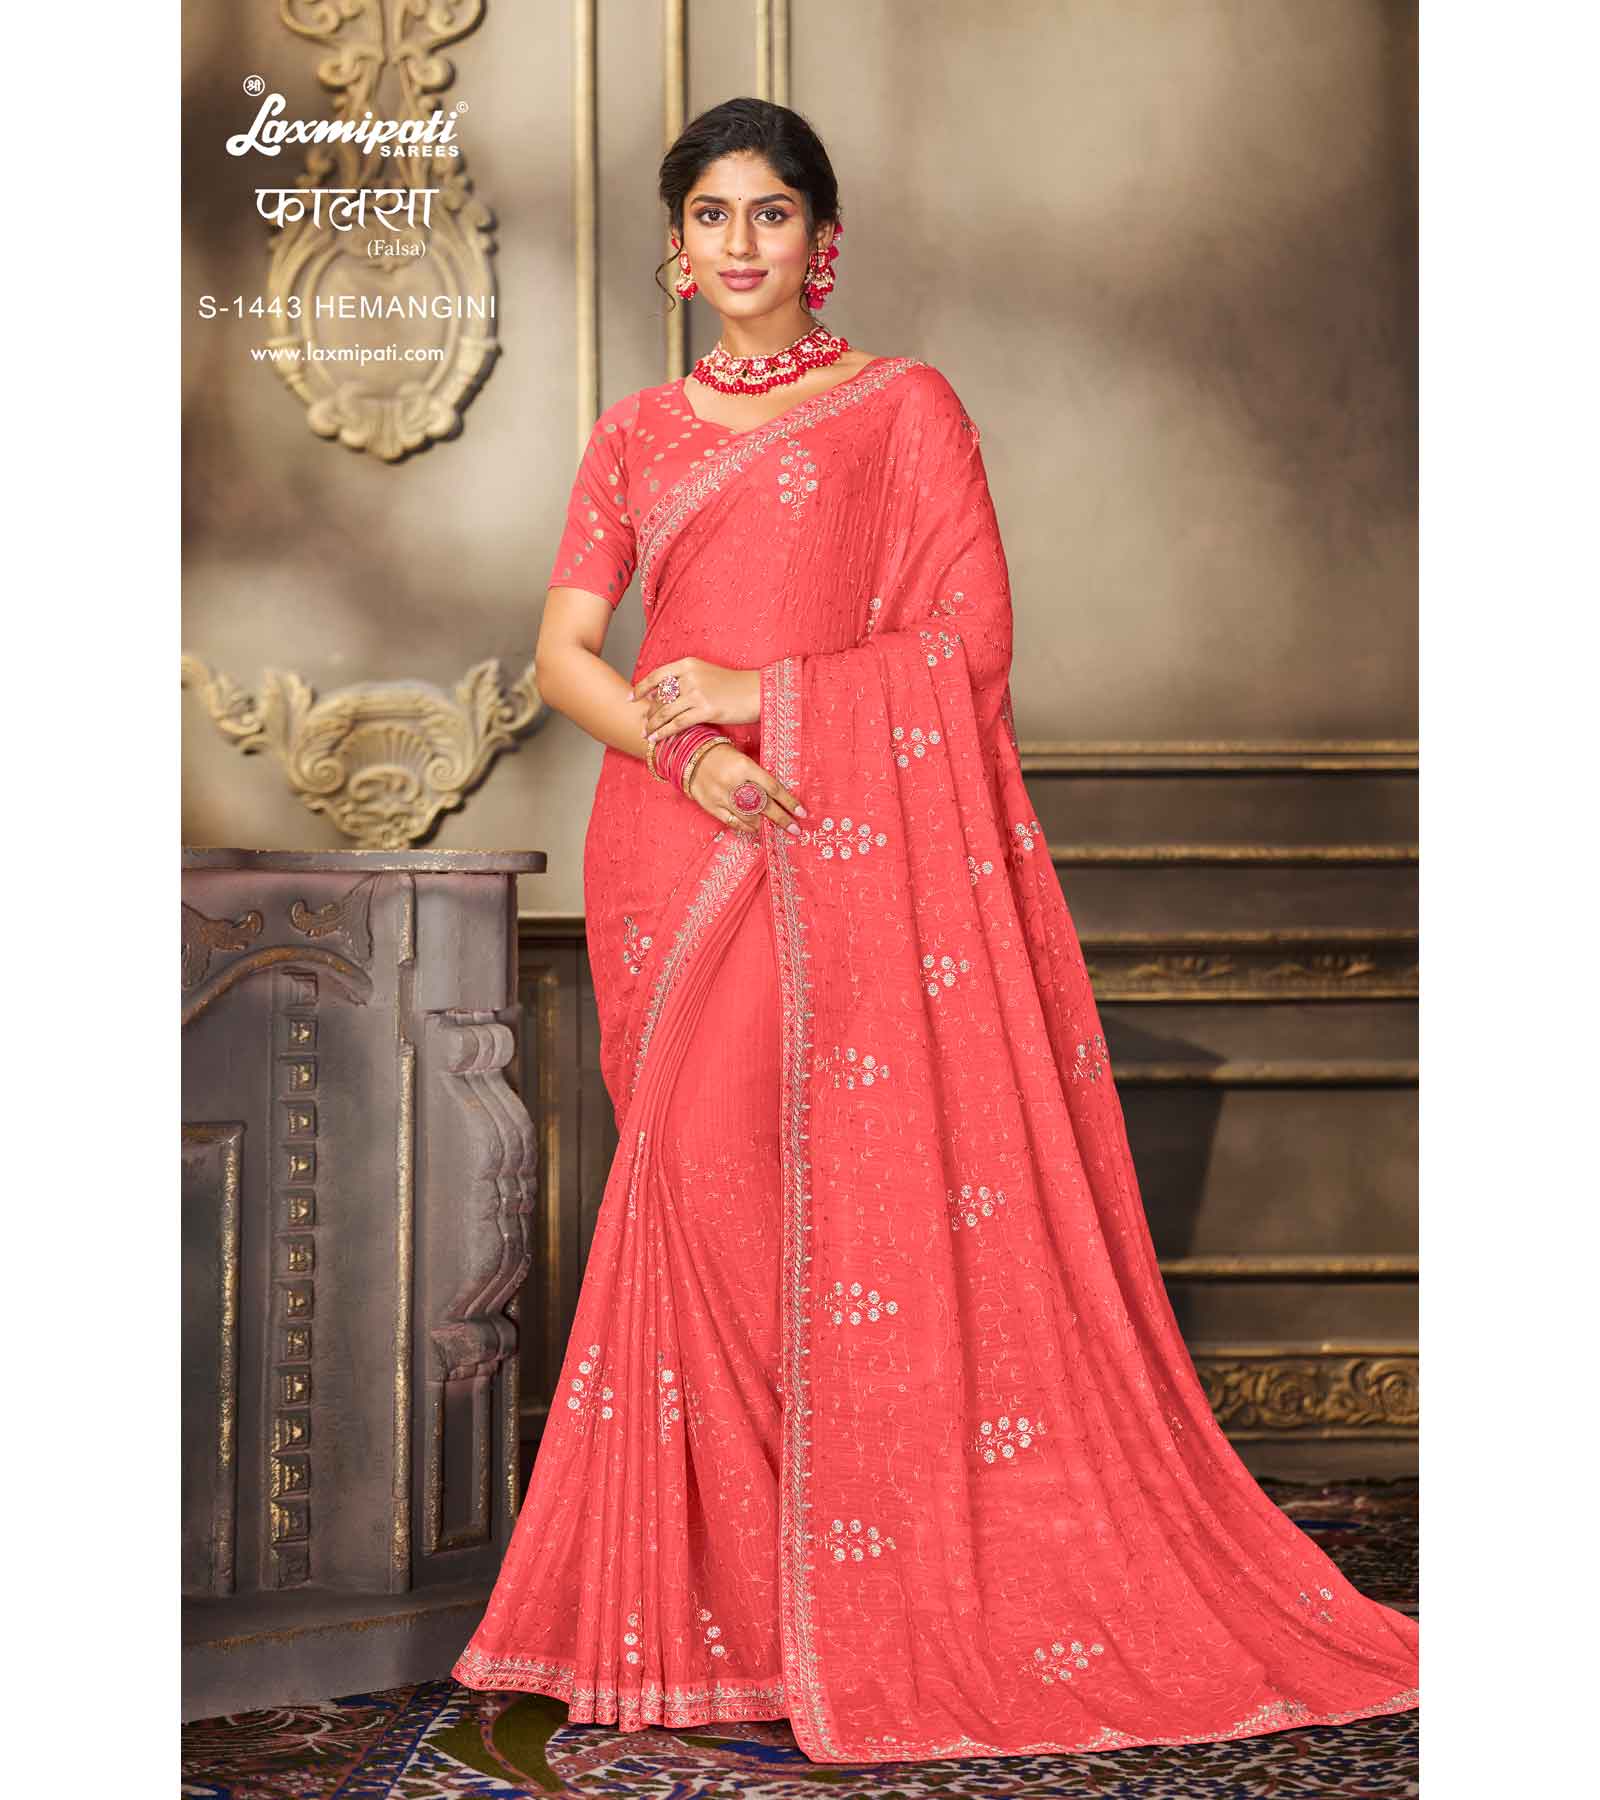 Captivating red chiffon saree, stylish pattern – Laxmipati Sarees | Sale